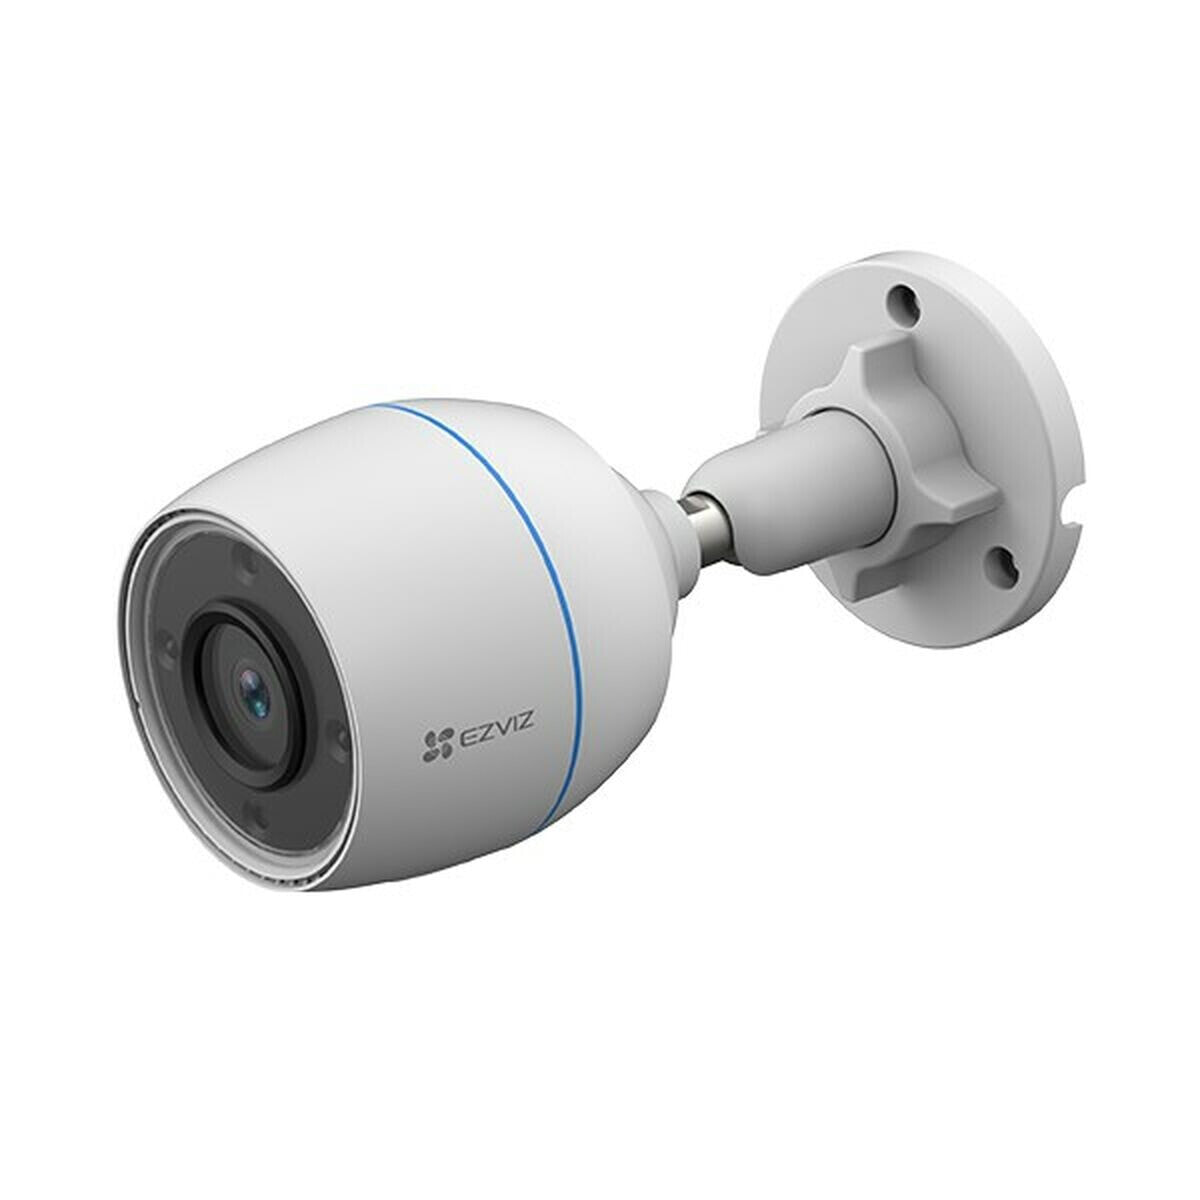 EZVIZ H3c Пуля IP камера видеонаблюдения Вне помещения 1920 x 1080 пикселей Стена CS-H3C